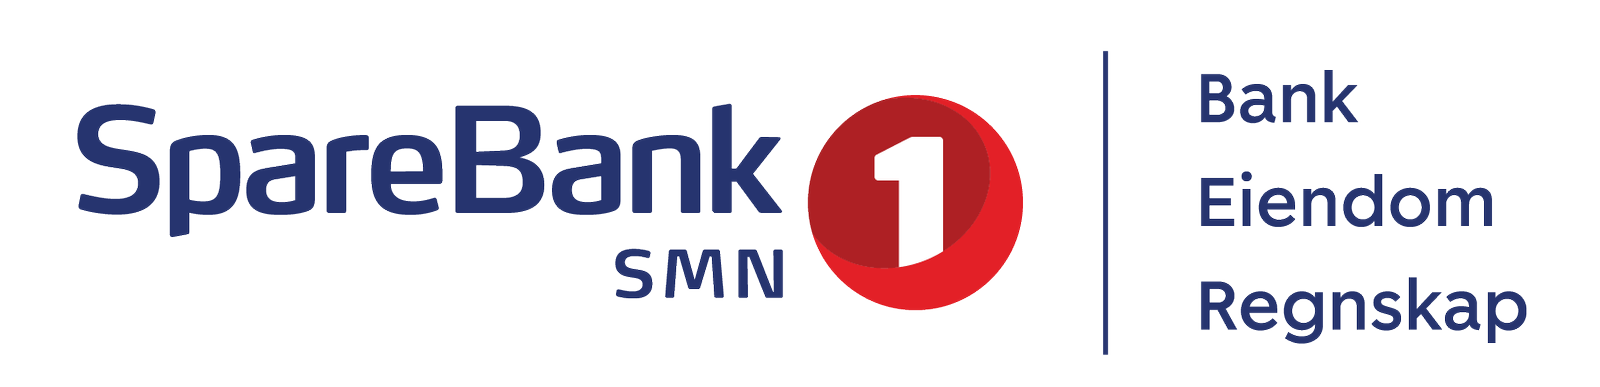 SpareBank 1 SMN